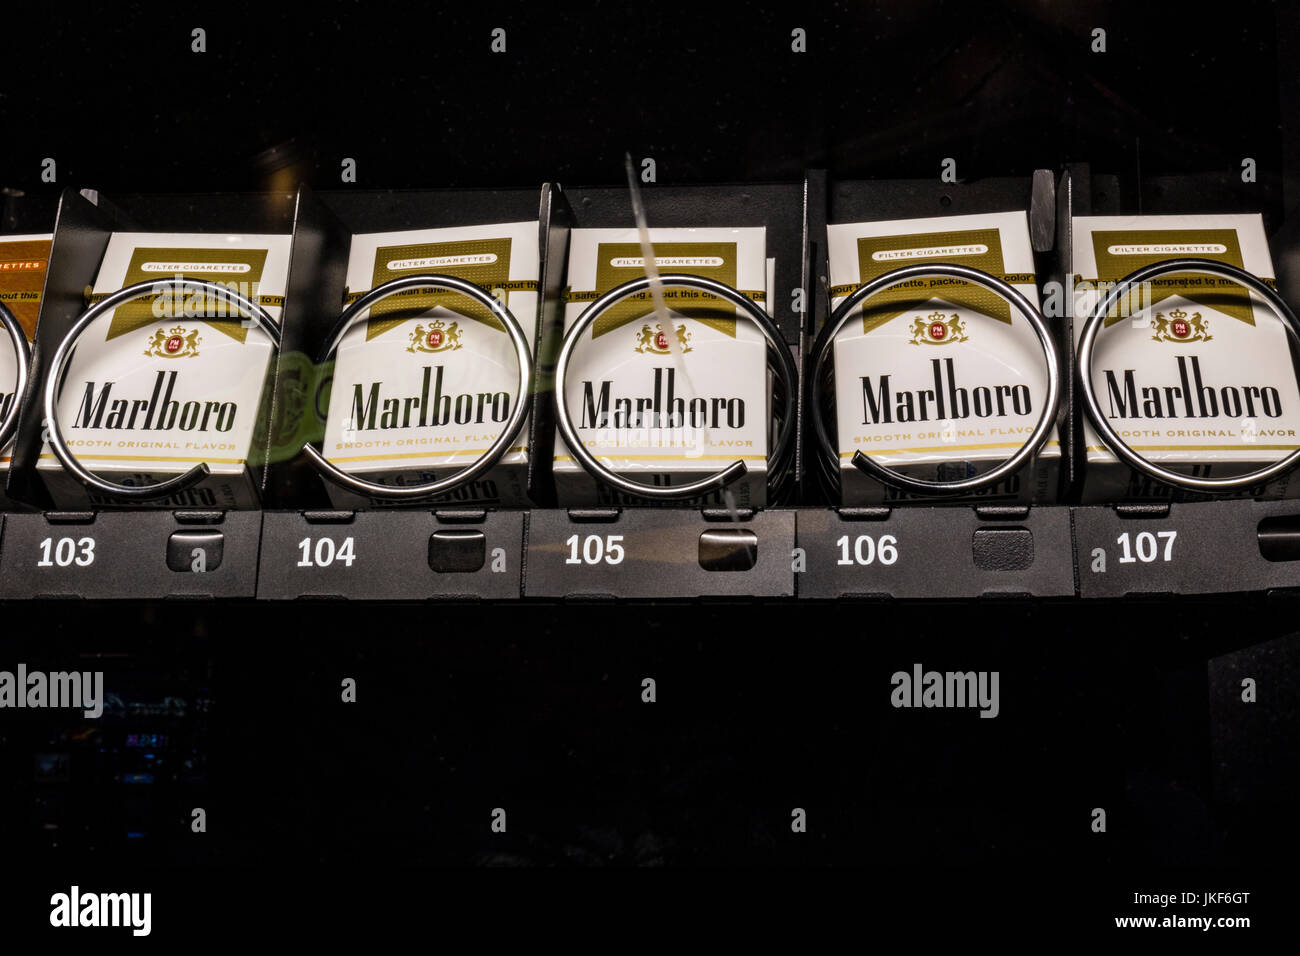 Las Vegas - Circa Juillet 2017 : paquets de cigarettes Marlboro dans un distributeur automatique. Marlboro est un produit de l'Altria Group II Banque D'Images